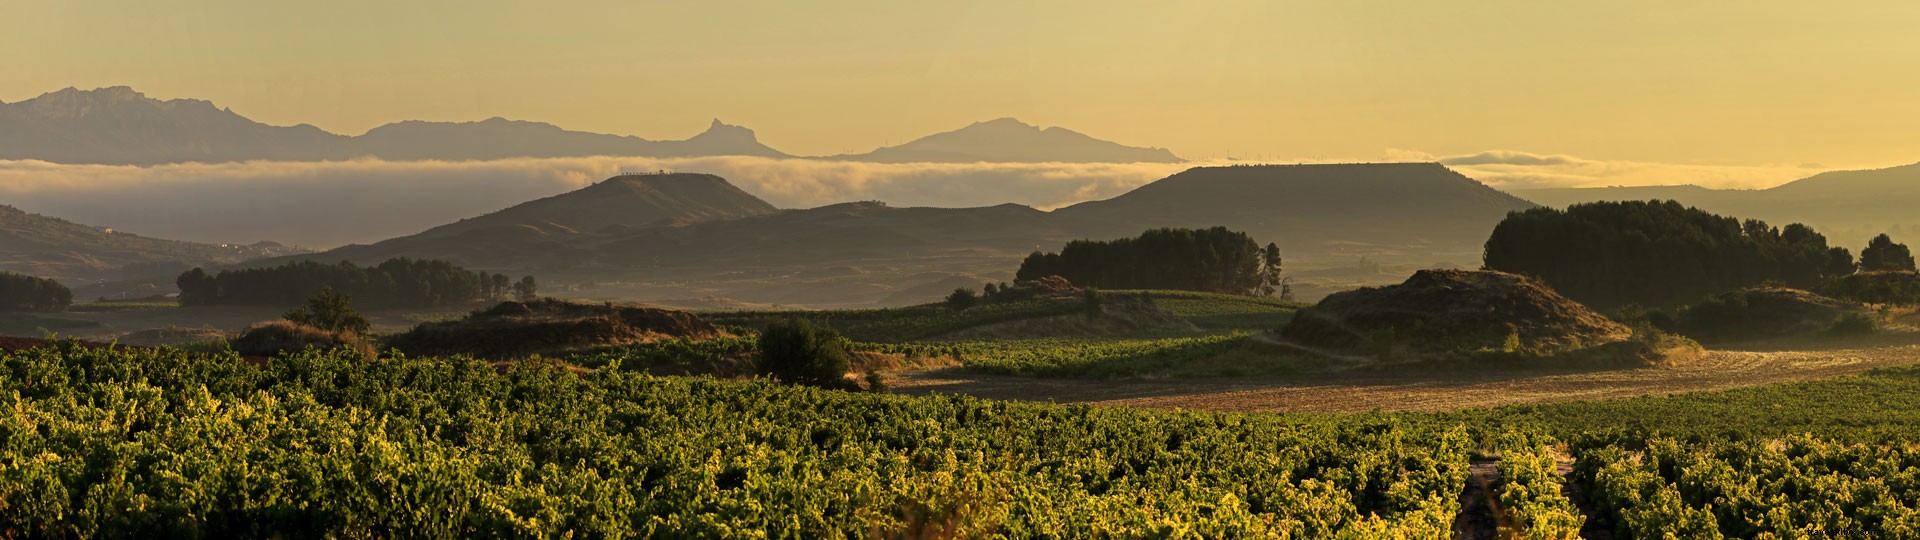 Des expériences inoubliables en dégustant du vin à La Rioja 